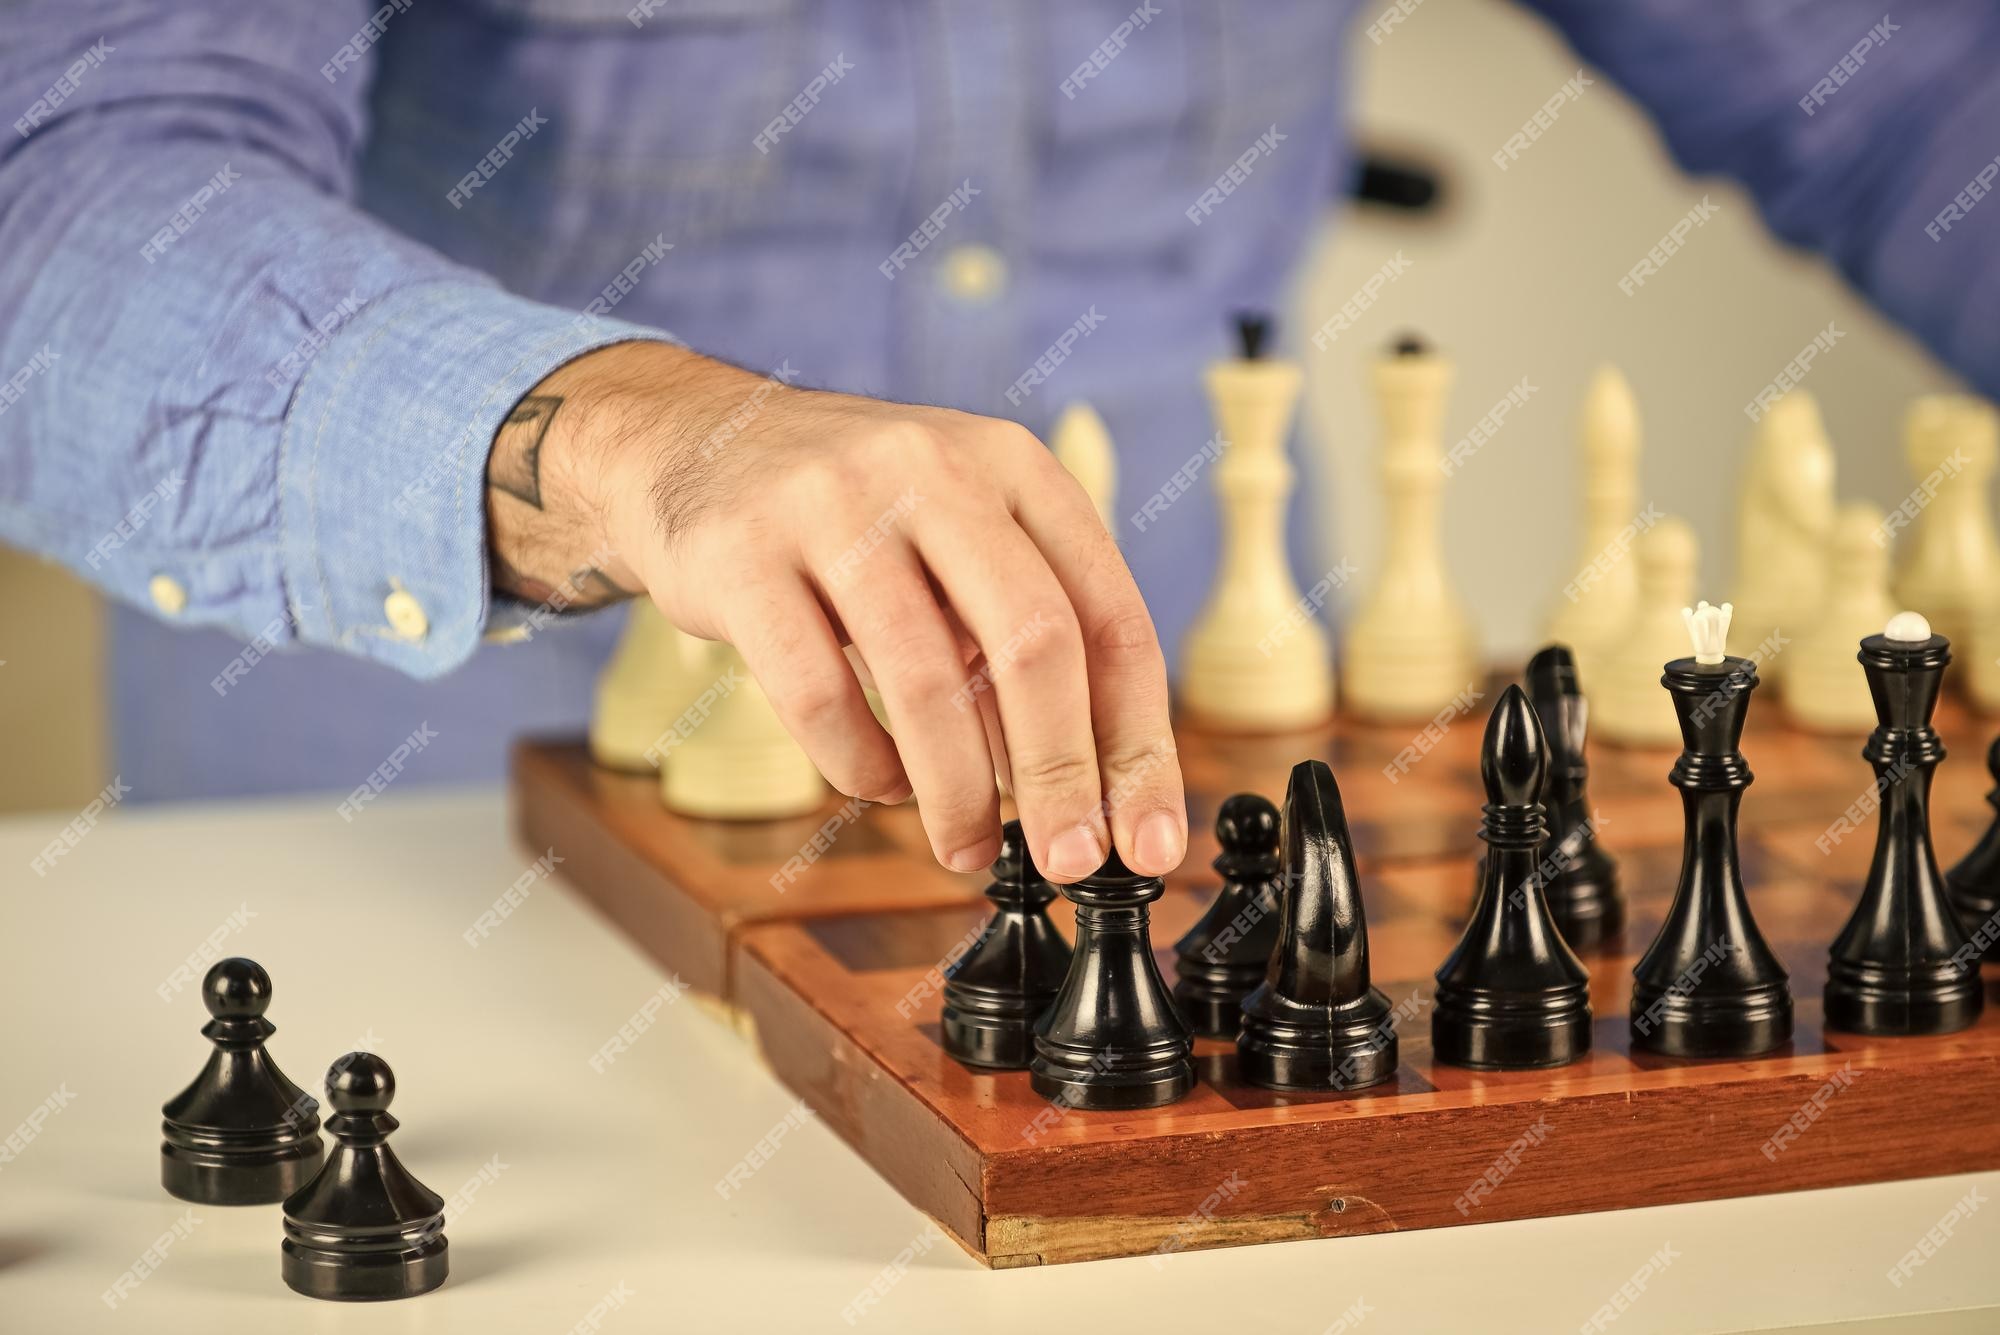 Aulas de Xadrez - Aprenda de maneira fácil e prática, conhecendo